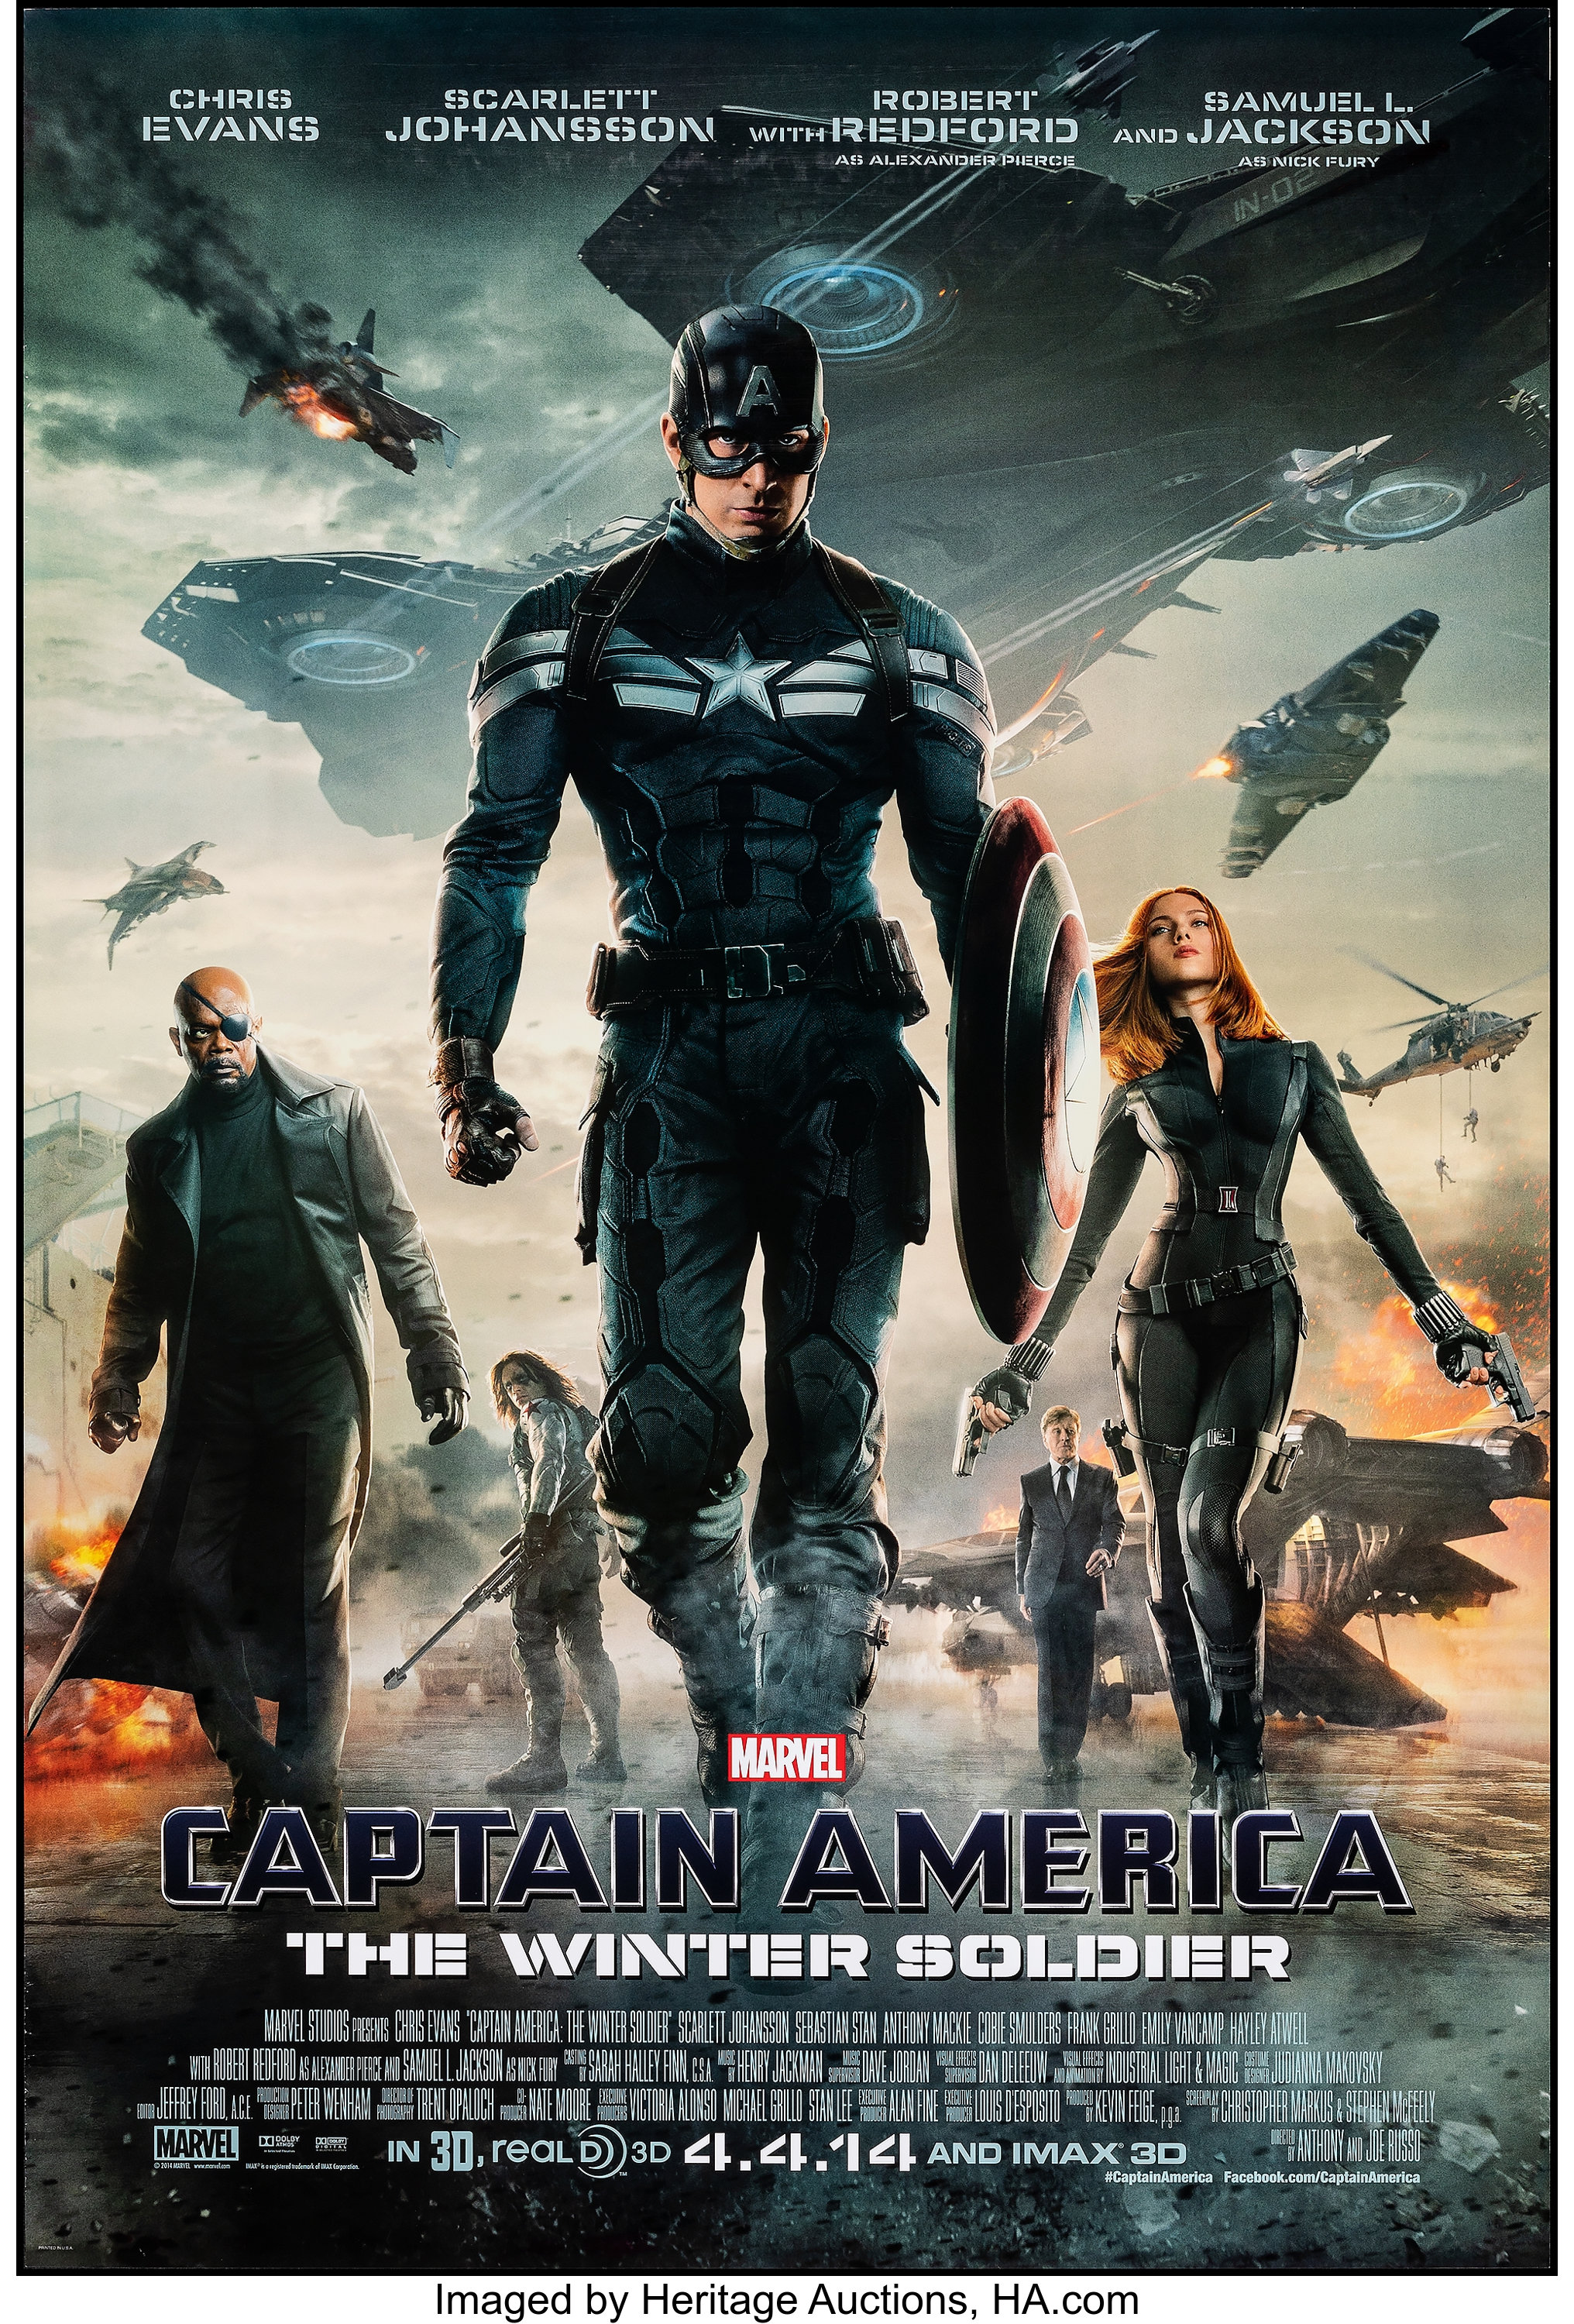 Avengers: Endgame Movie Poster 2019 1 Sheet (27x41)